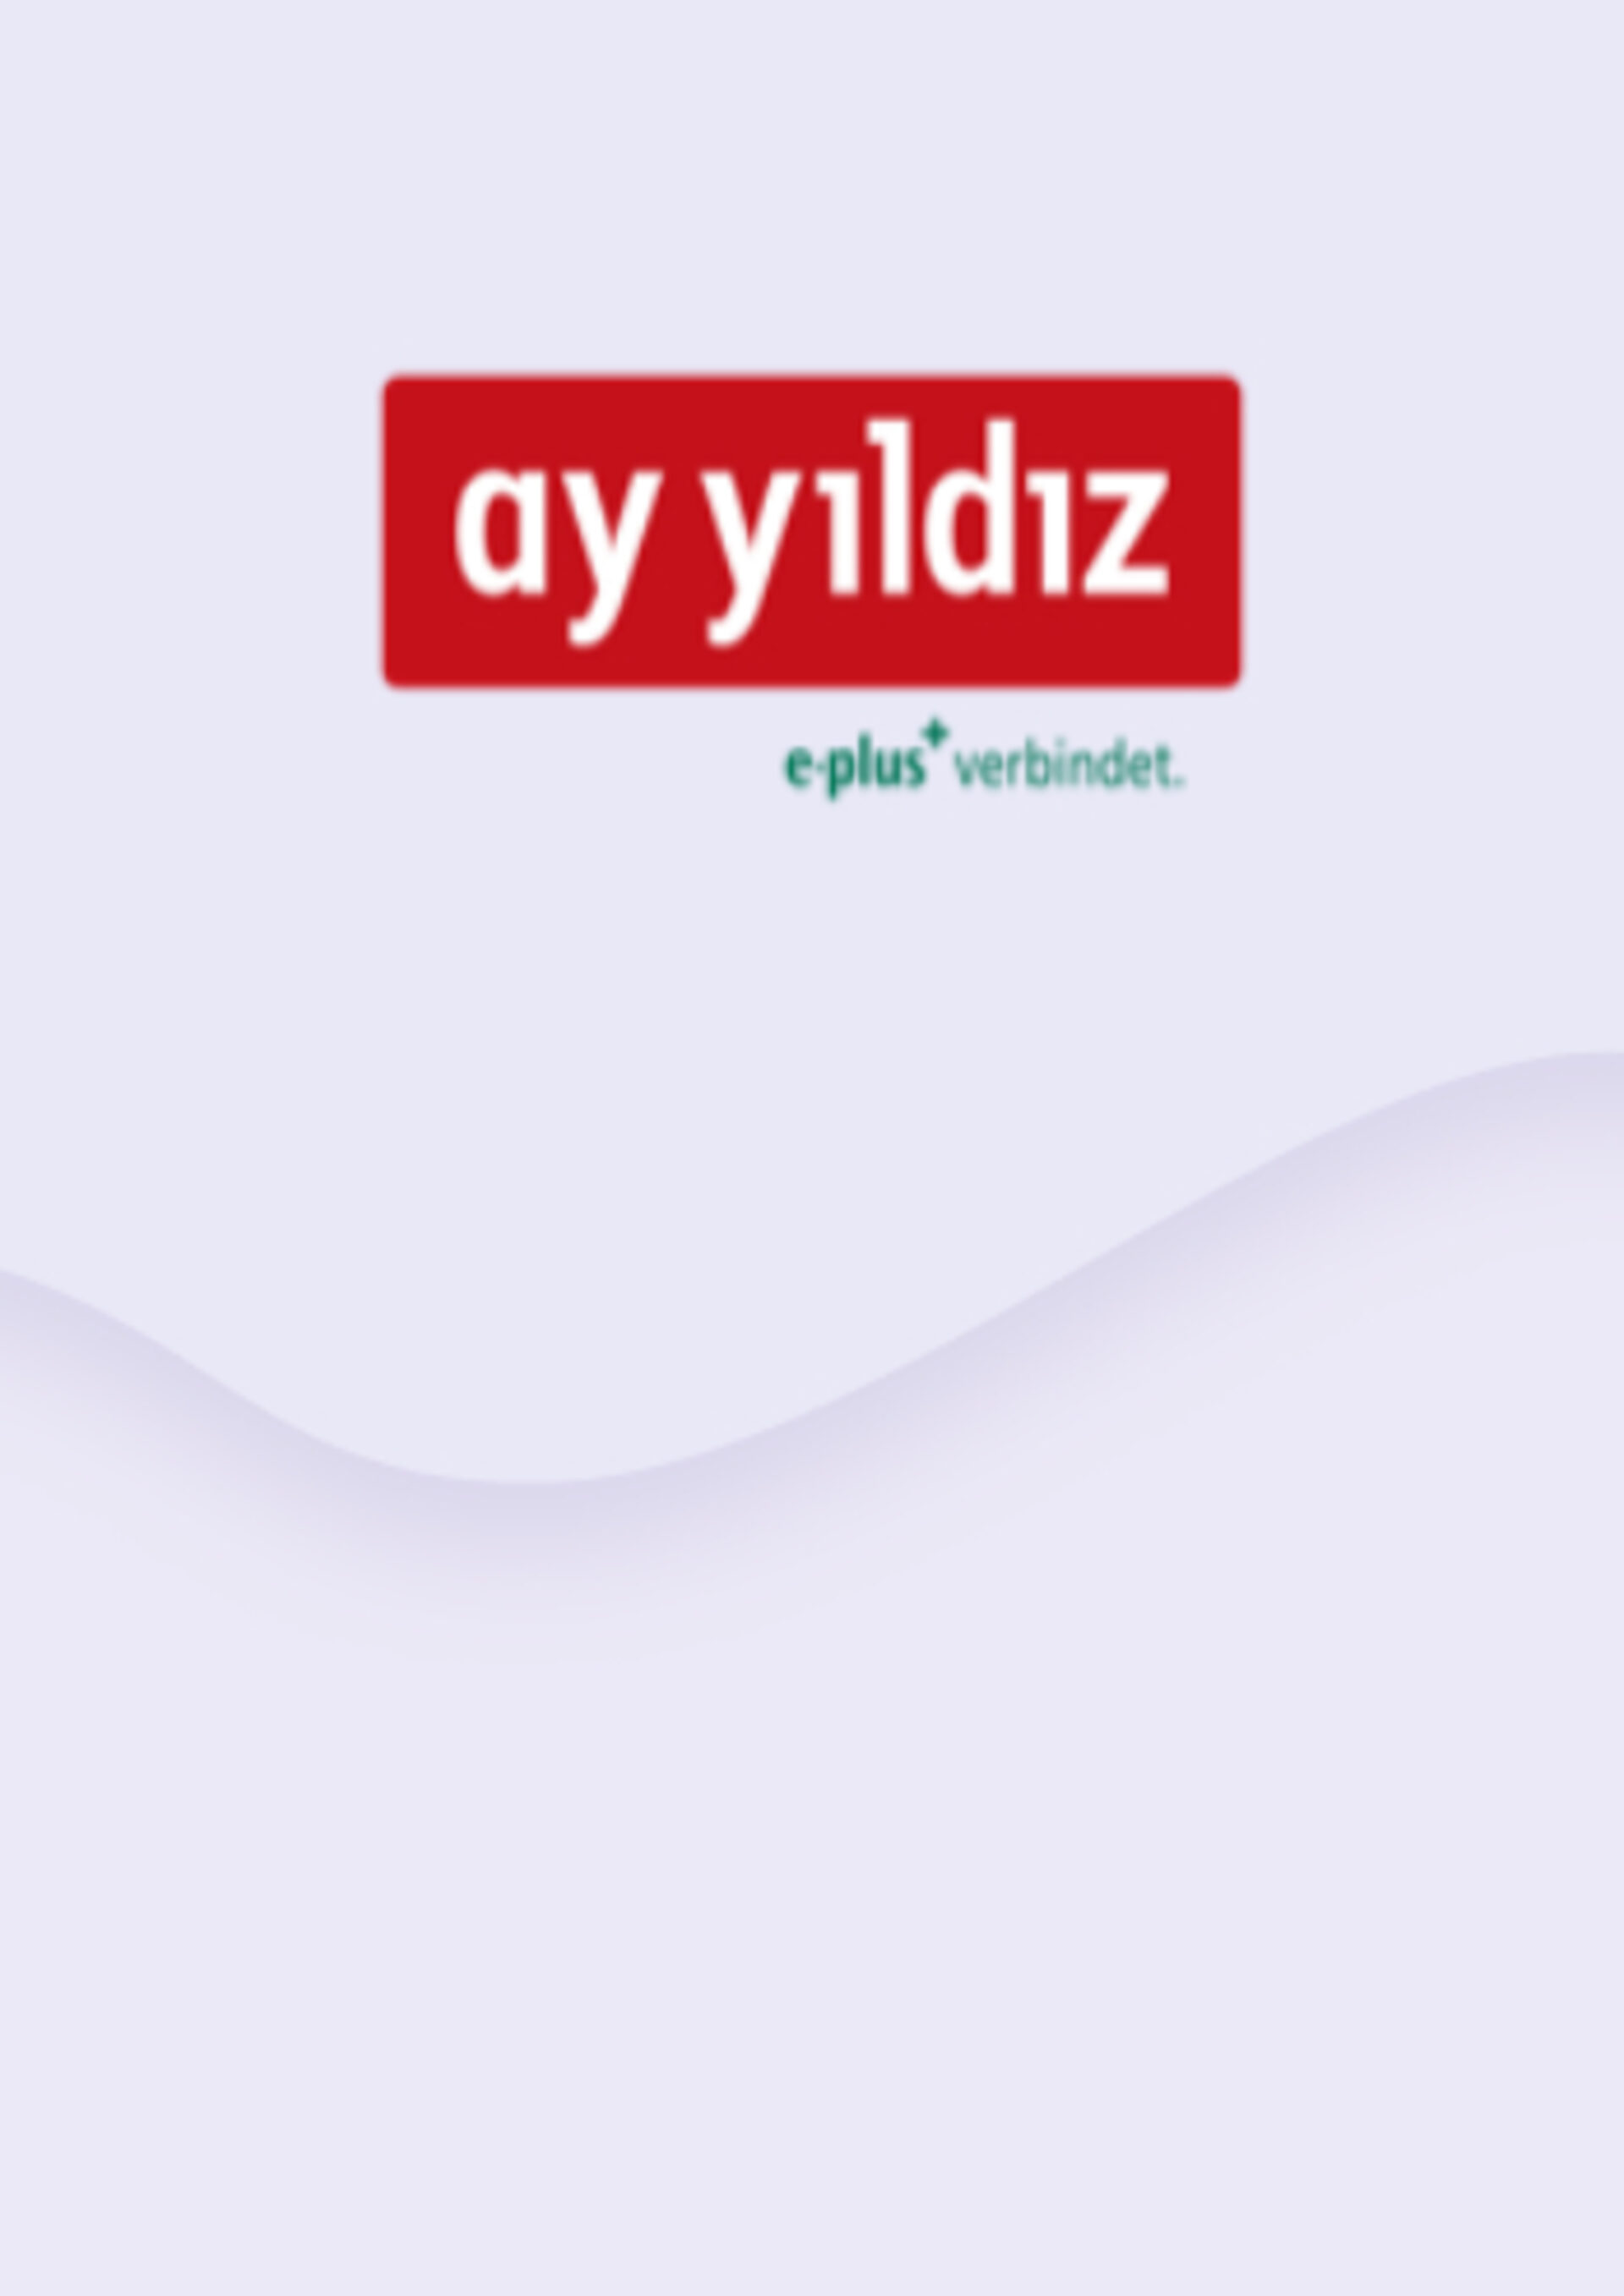 Ay Yildiz aufladen | Schnell, billig und einfach | ENEBA